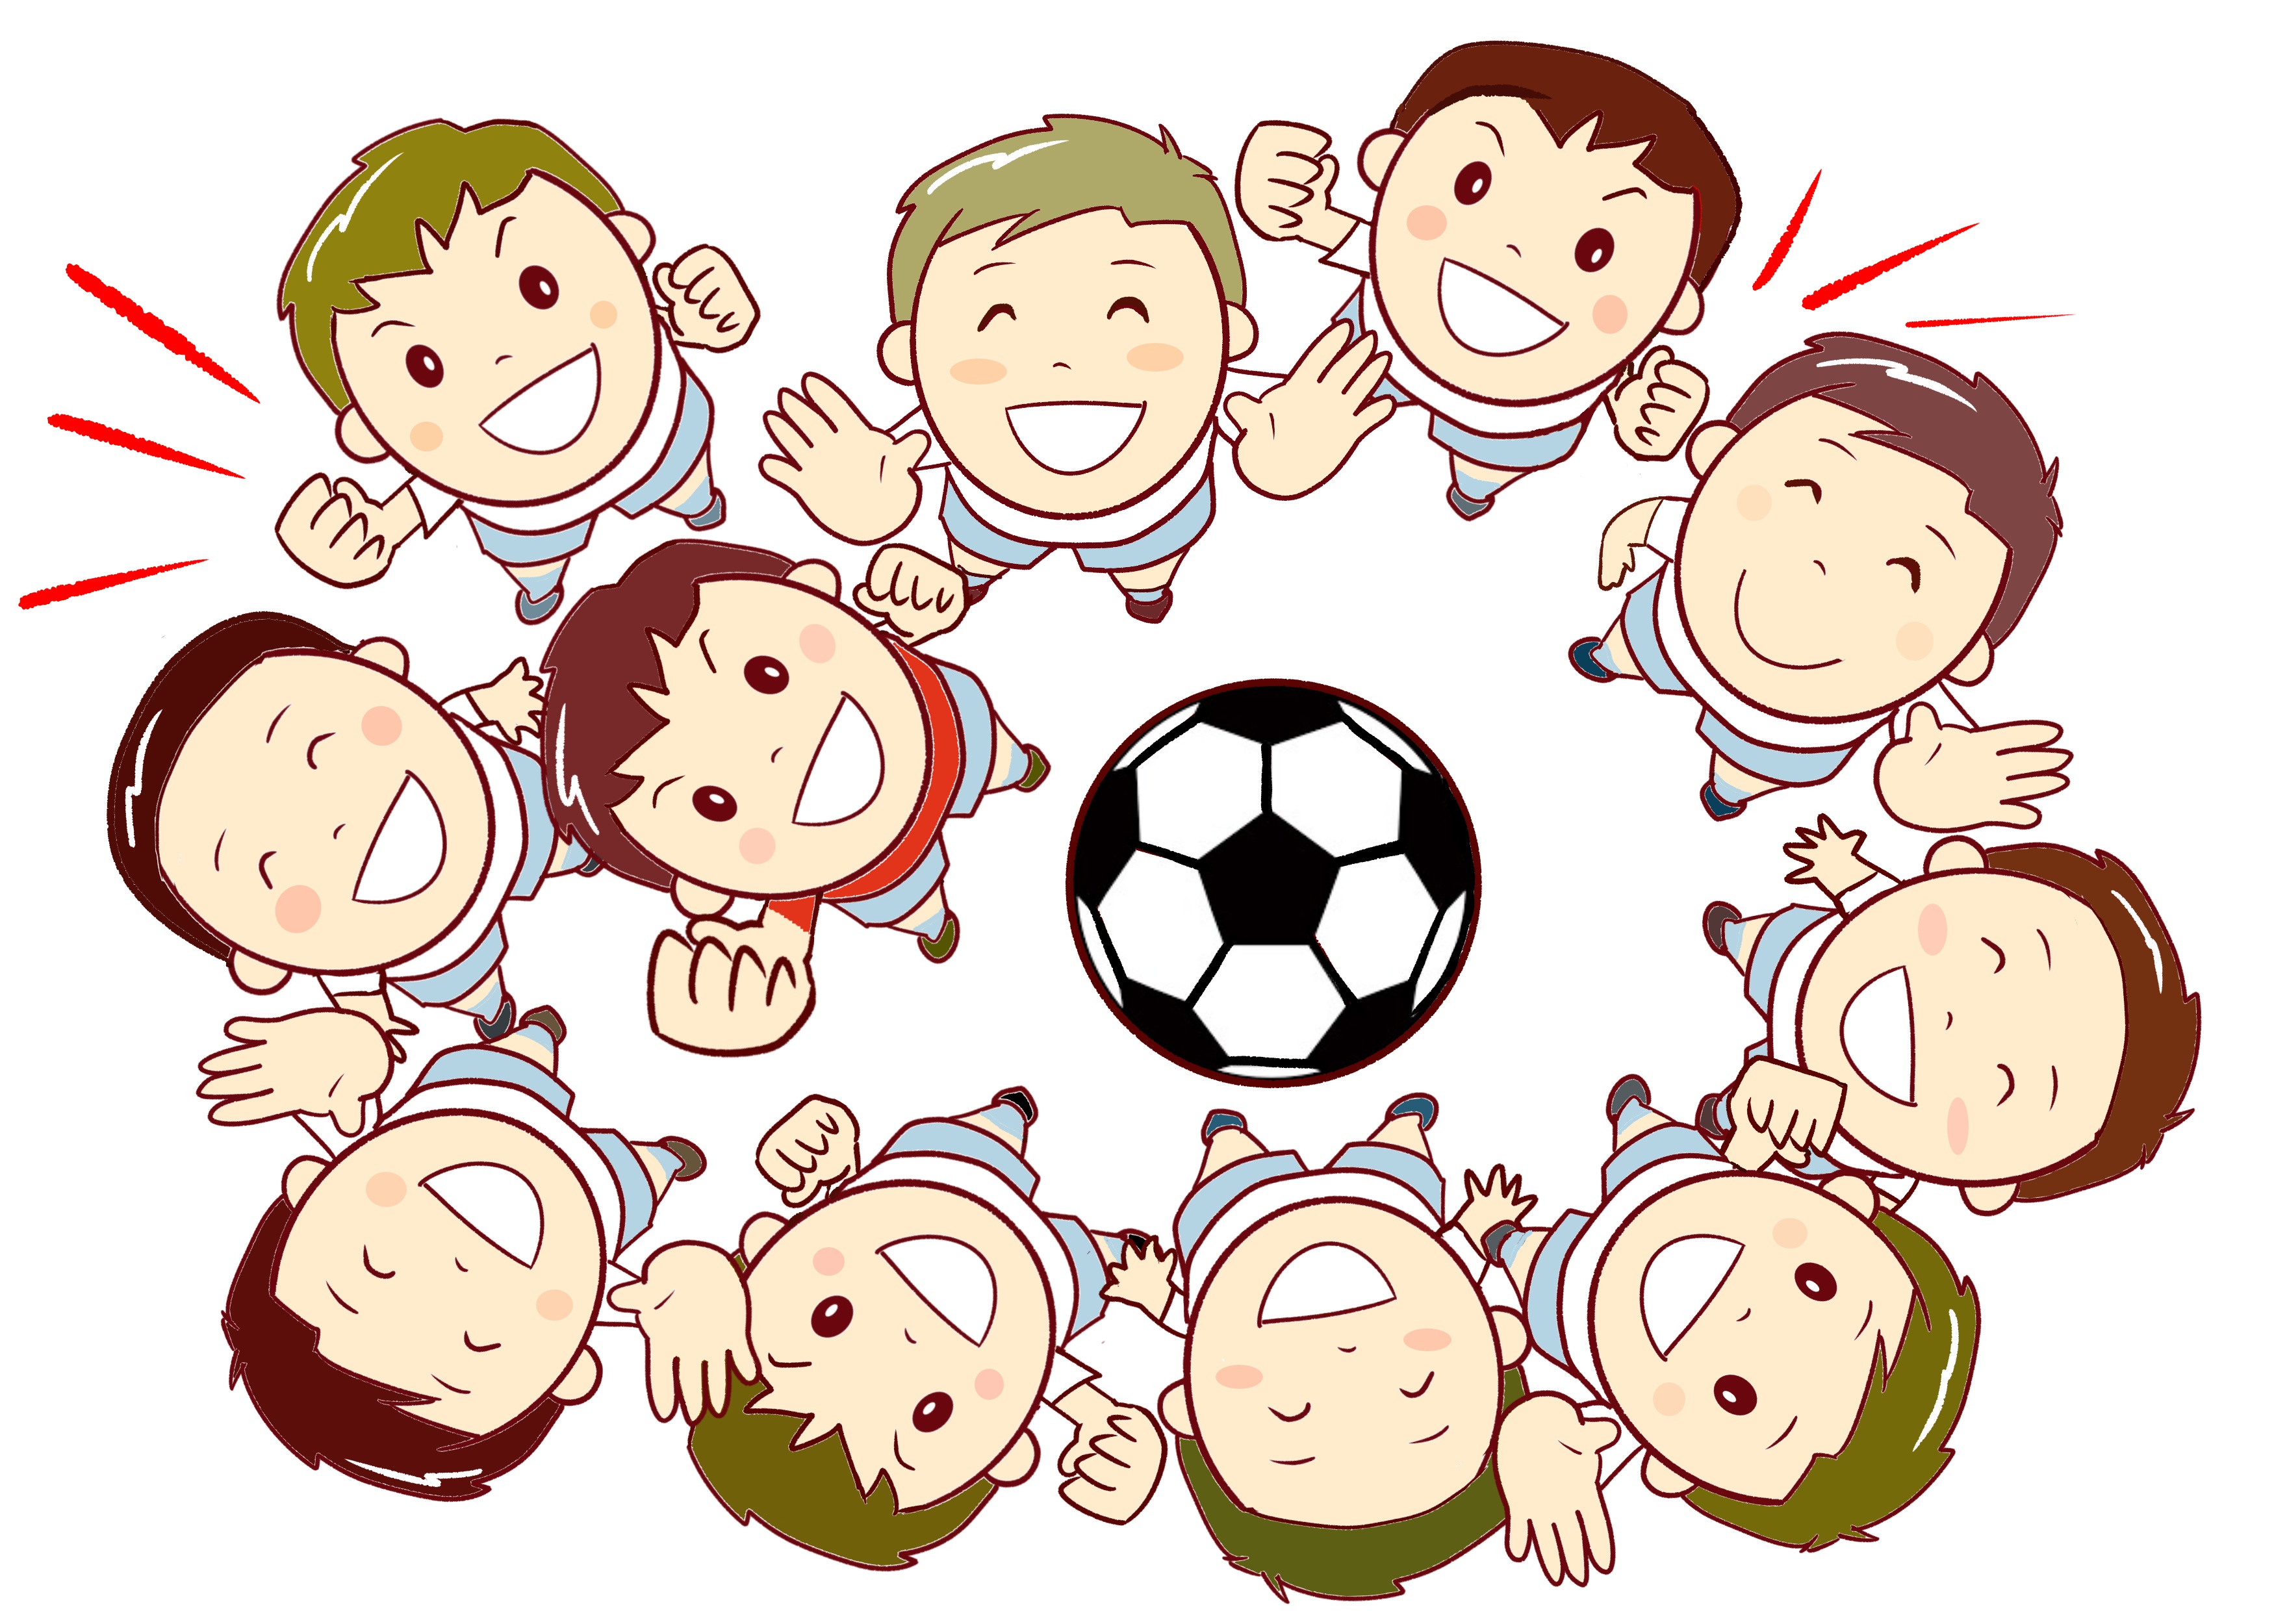 唐崎スポーツ少年団サッカー部で無料体験会が開催されます！お子様の新しいチャレンジにいかがですか♪【4月17日】